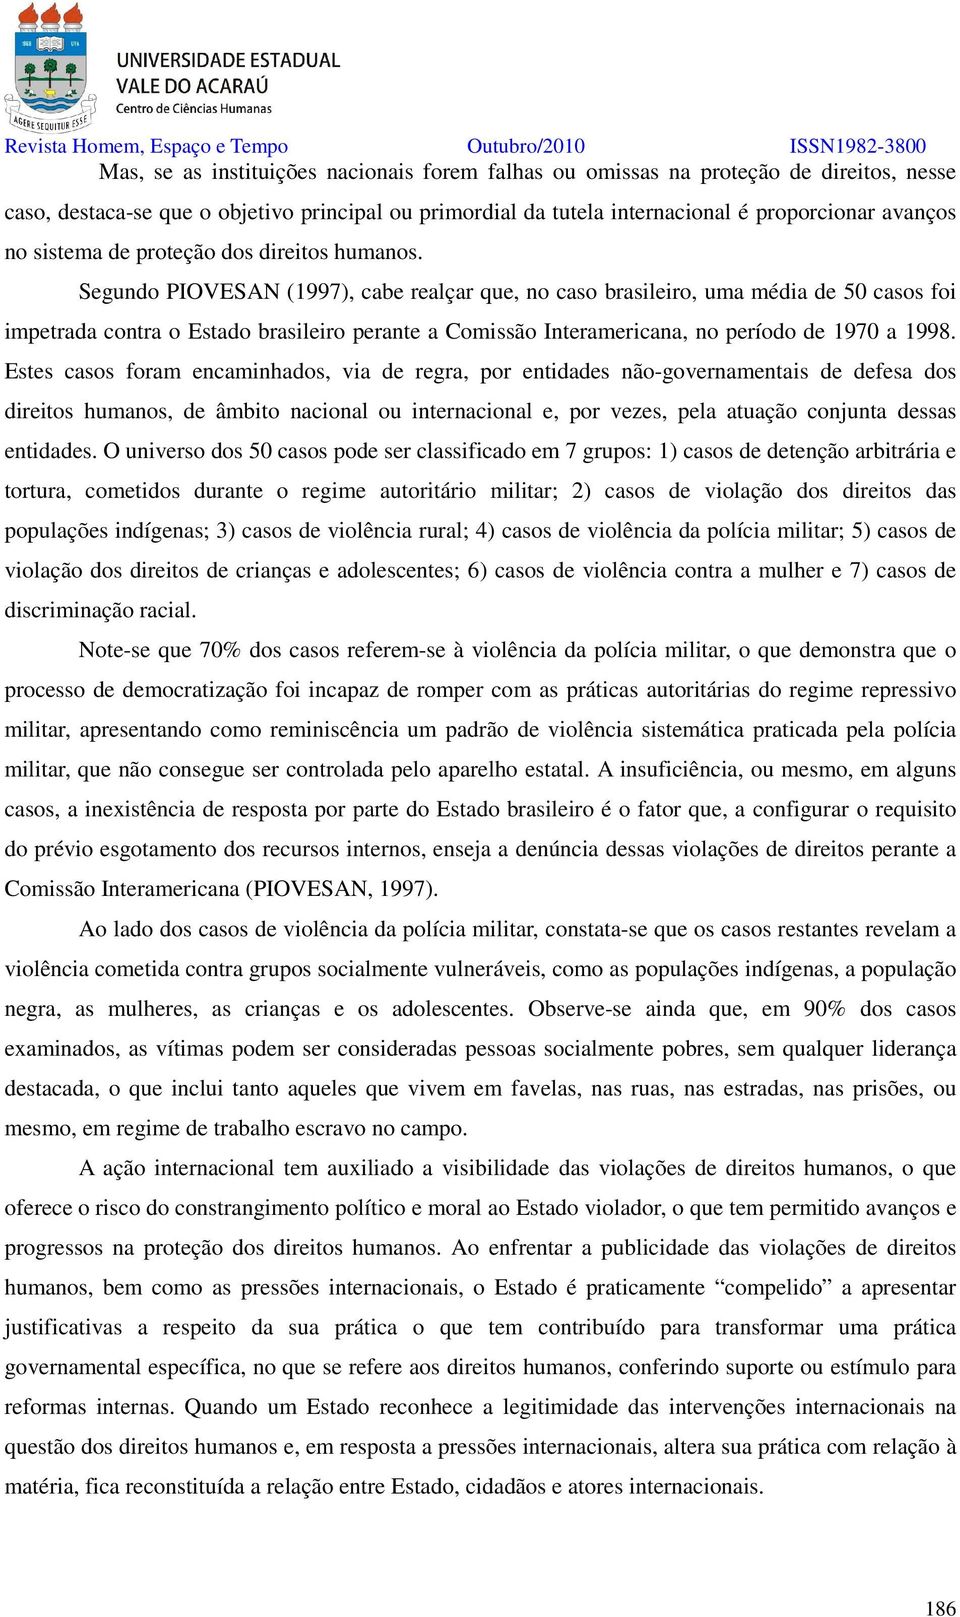 Segundo PIOVESAN (1997), cabe realçar que, no caso brasileiro, uma média de 50 casos foi impetrada contra o Estado brasileiro perante a Comissão Interamericana, no período de 1970 a 1998.